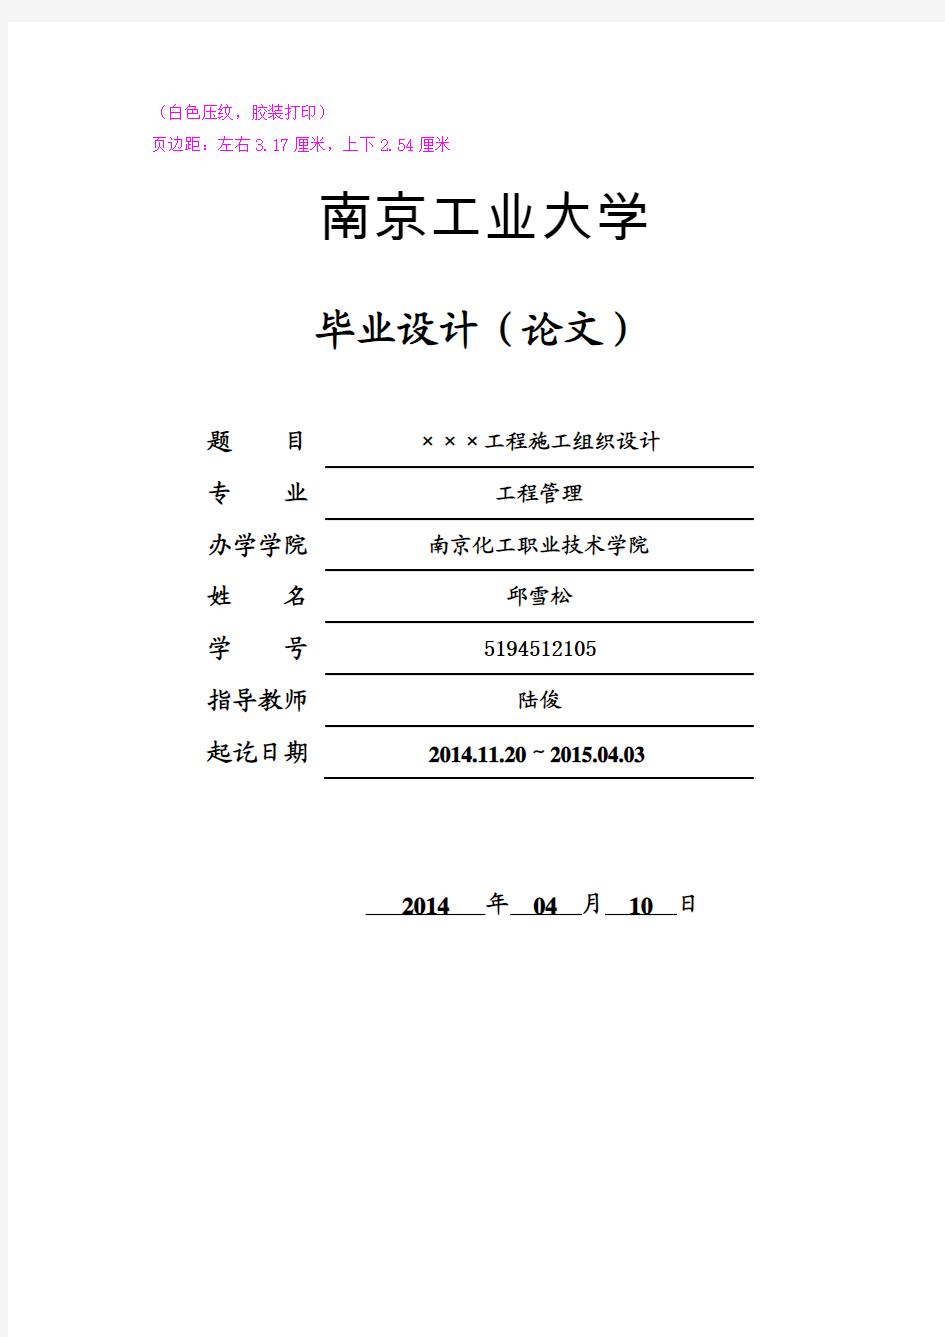 南京工业大学论文格式注解版 - 副本